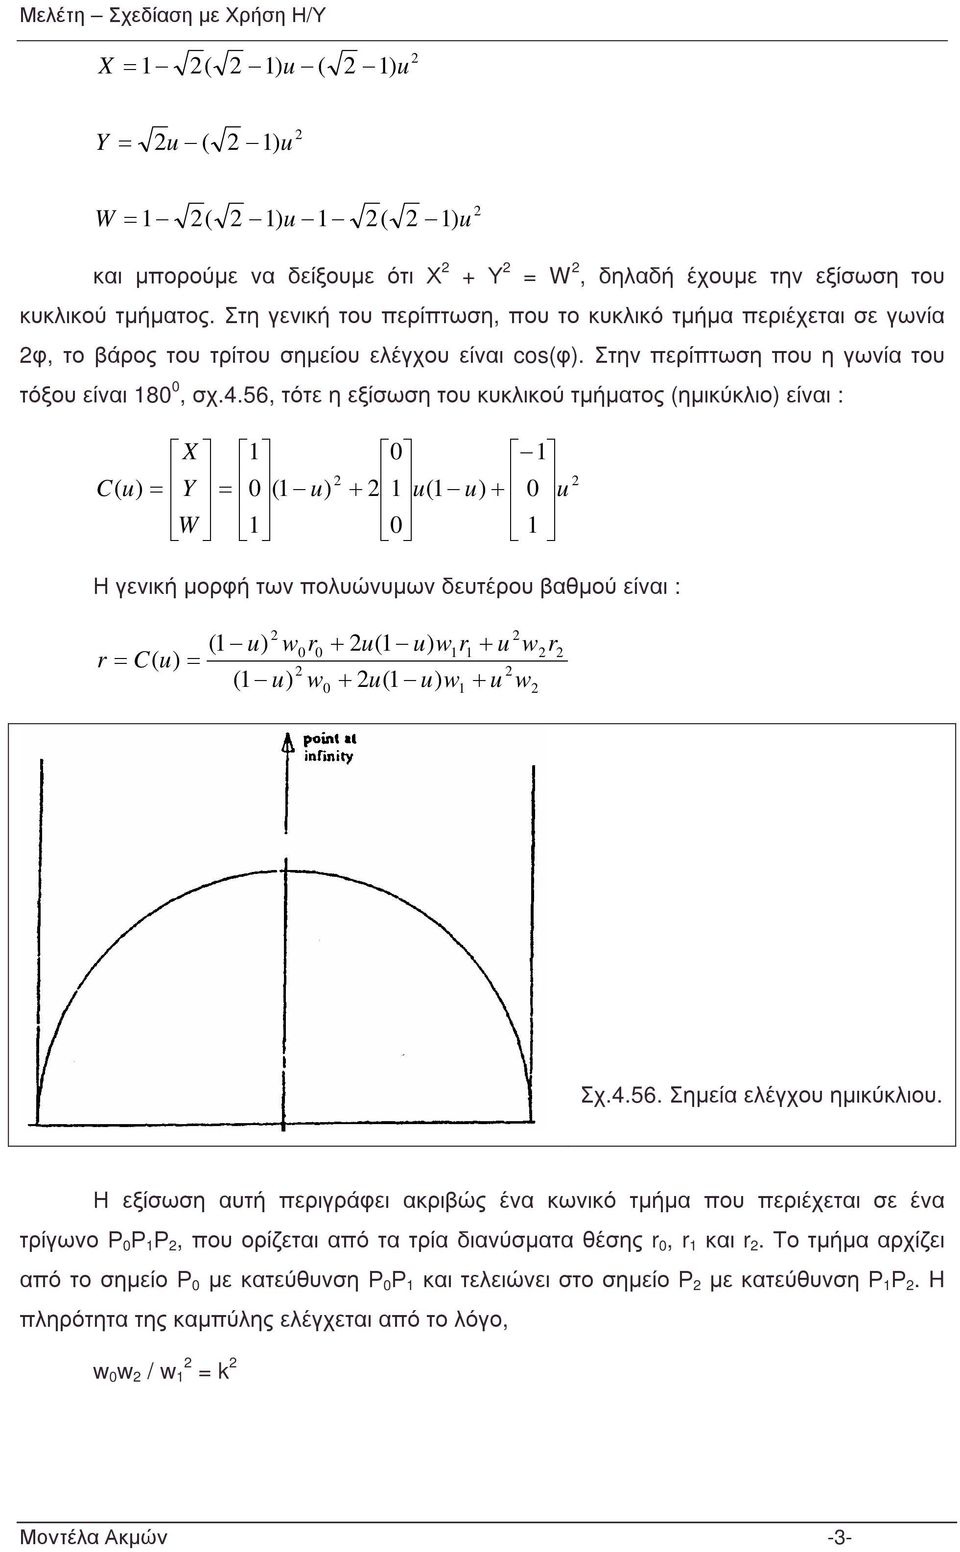 56 τότε η εξίσωση του κυκλικού τµήµατος ηµικύκλιο είναι : Y X Η γενική µορφή των πολυώνυµων δευτέρου βαθµού είναι : Σχ.4.56. Σηµεία ελέγχου ηµικύκλιου.